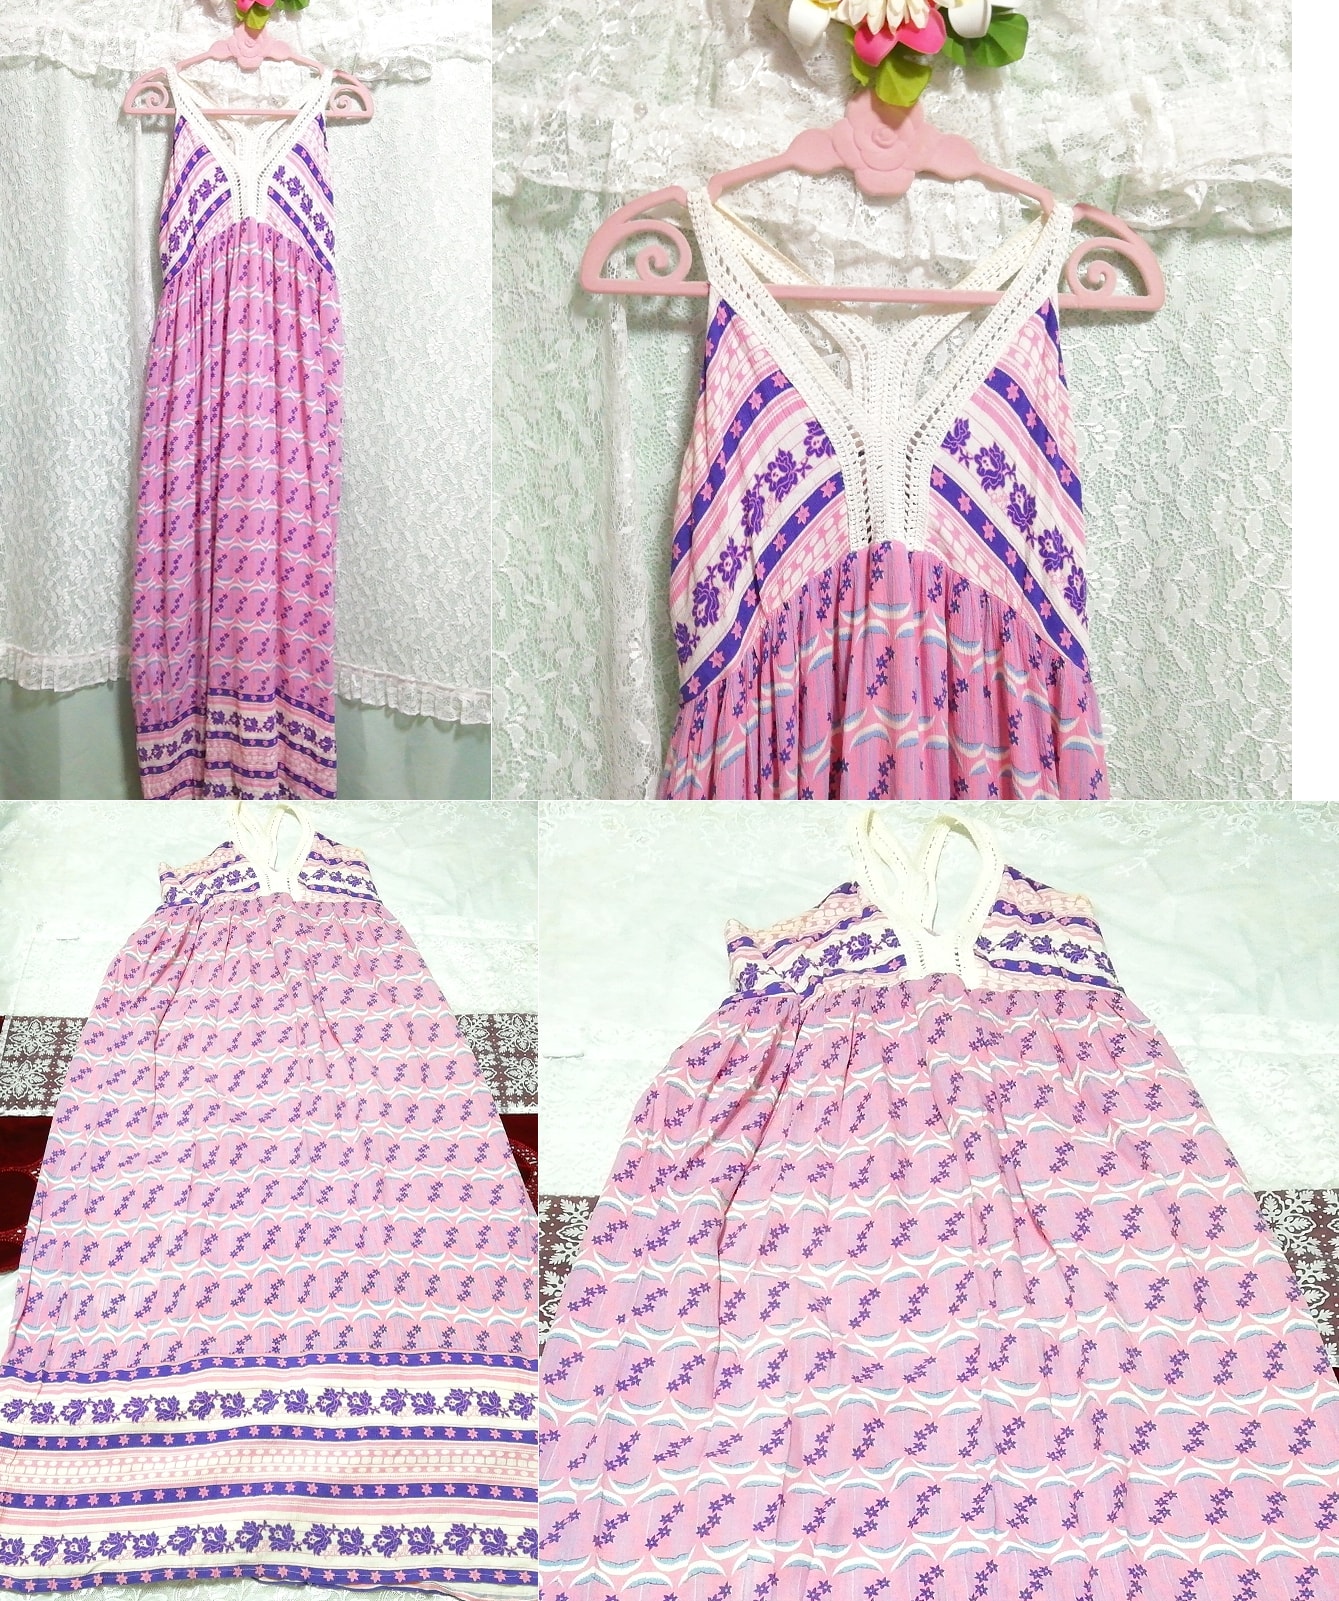 문 플로럴 프린트 핑크 네글리제 나이트가운 민소매 롱 스커트 맥시 드레스, 롱 스커트, l 사이즈